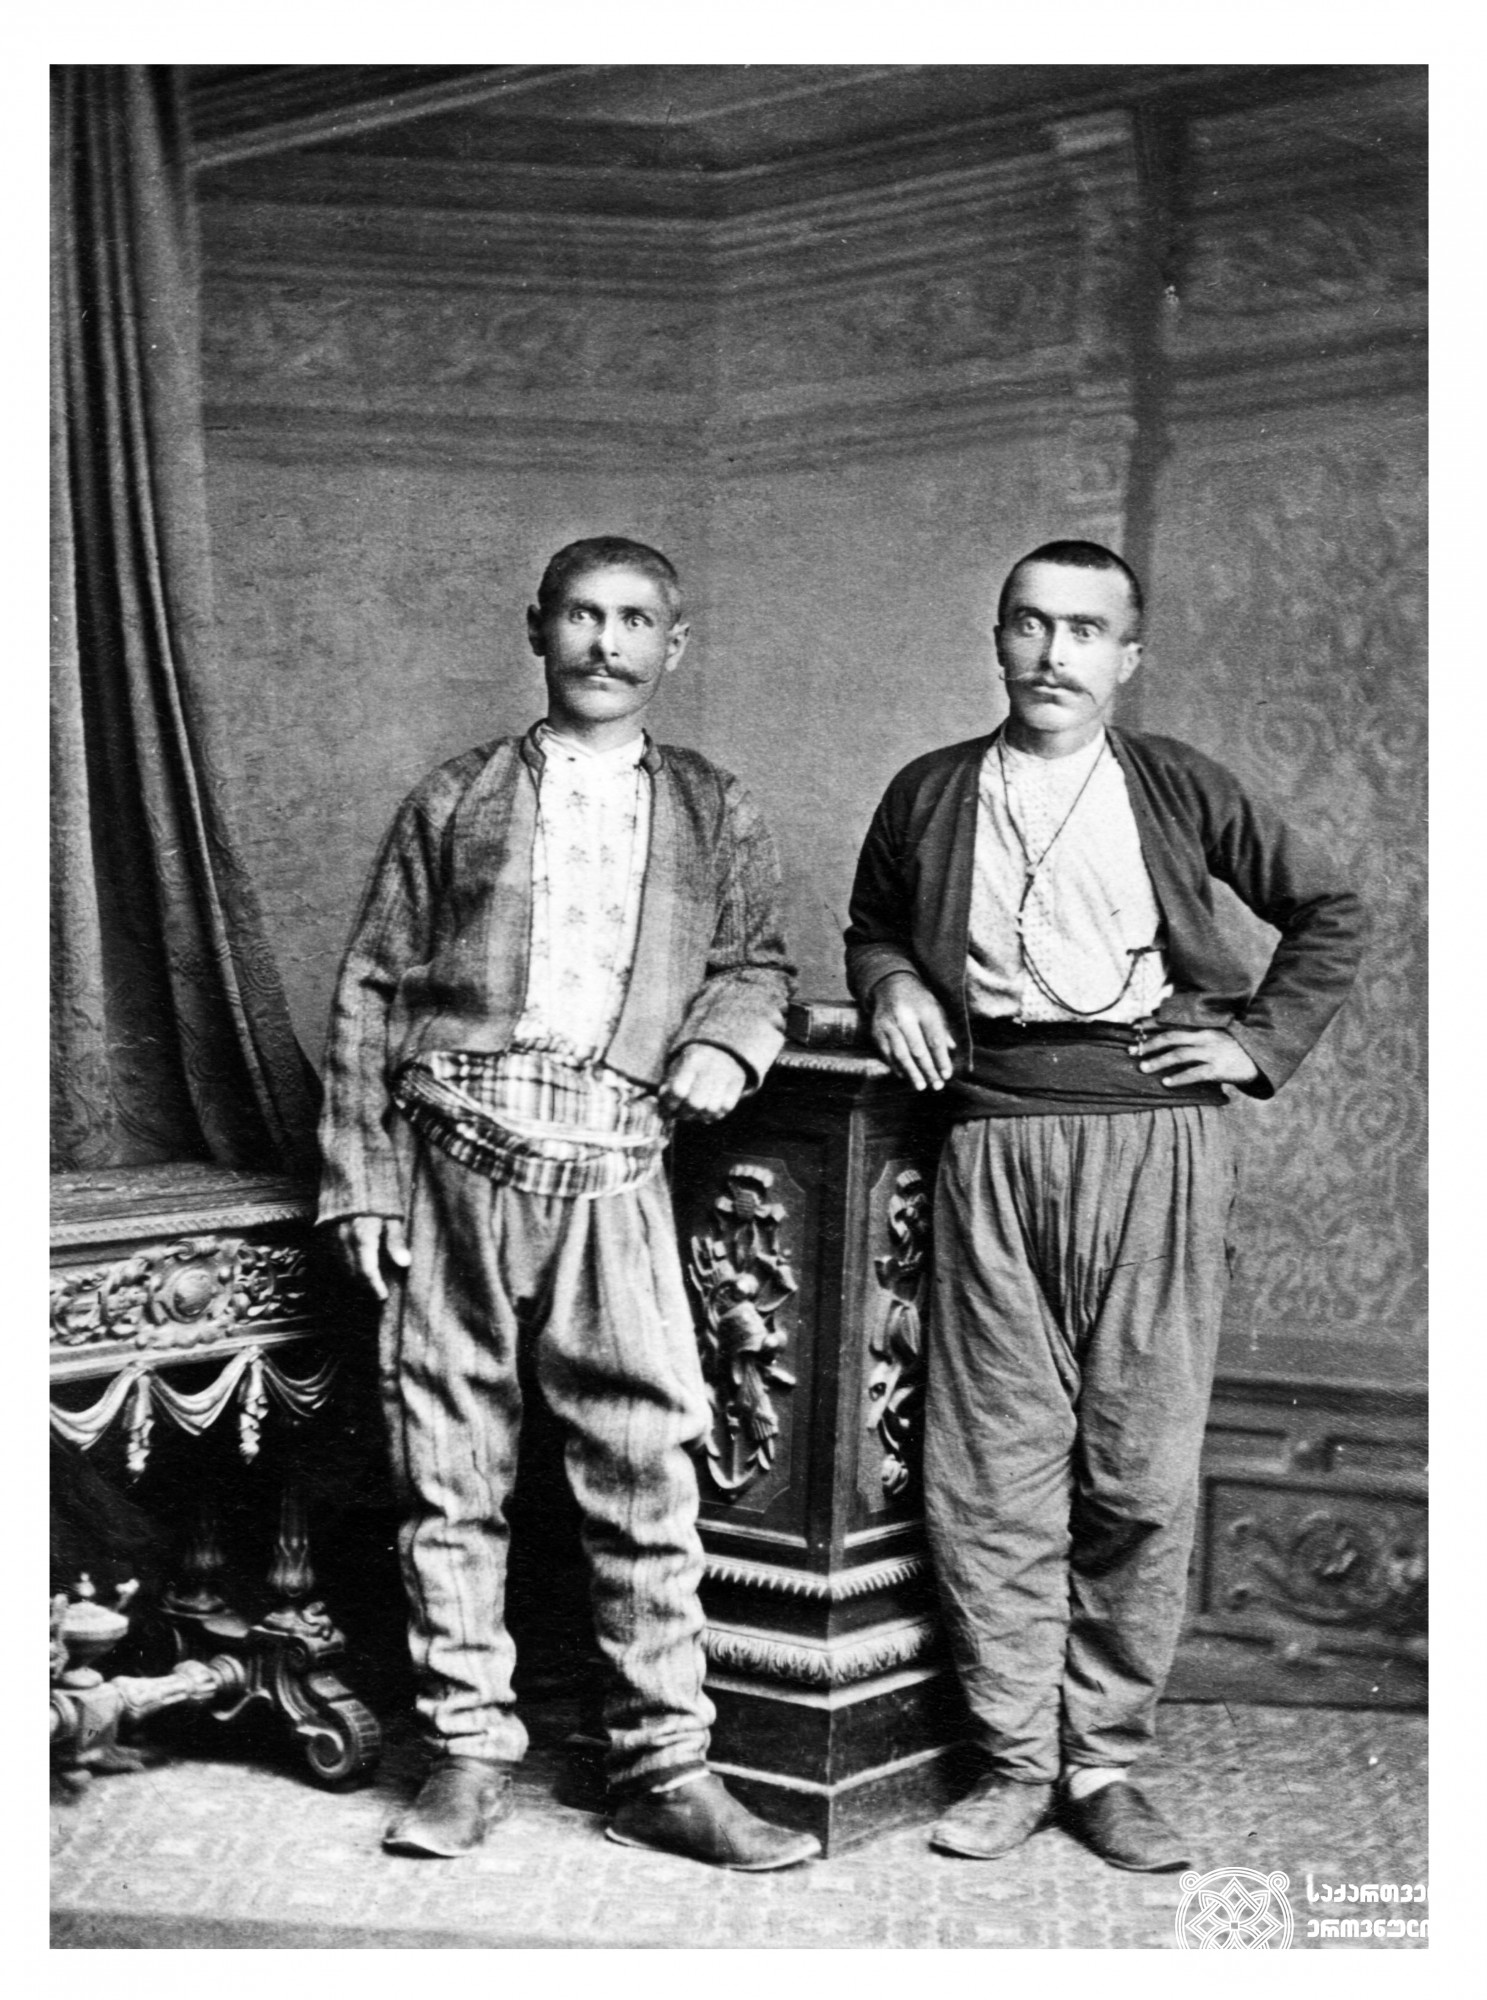 ბერძნები. <br>
ფოტო: დიმიტრი ერმაკოვის კოლექციიდან. <br>
[1890-1910]. <br>
The Greeks. <br>
Photo from Dmitry Ermakov’s collection. <br>
[1890-1910].